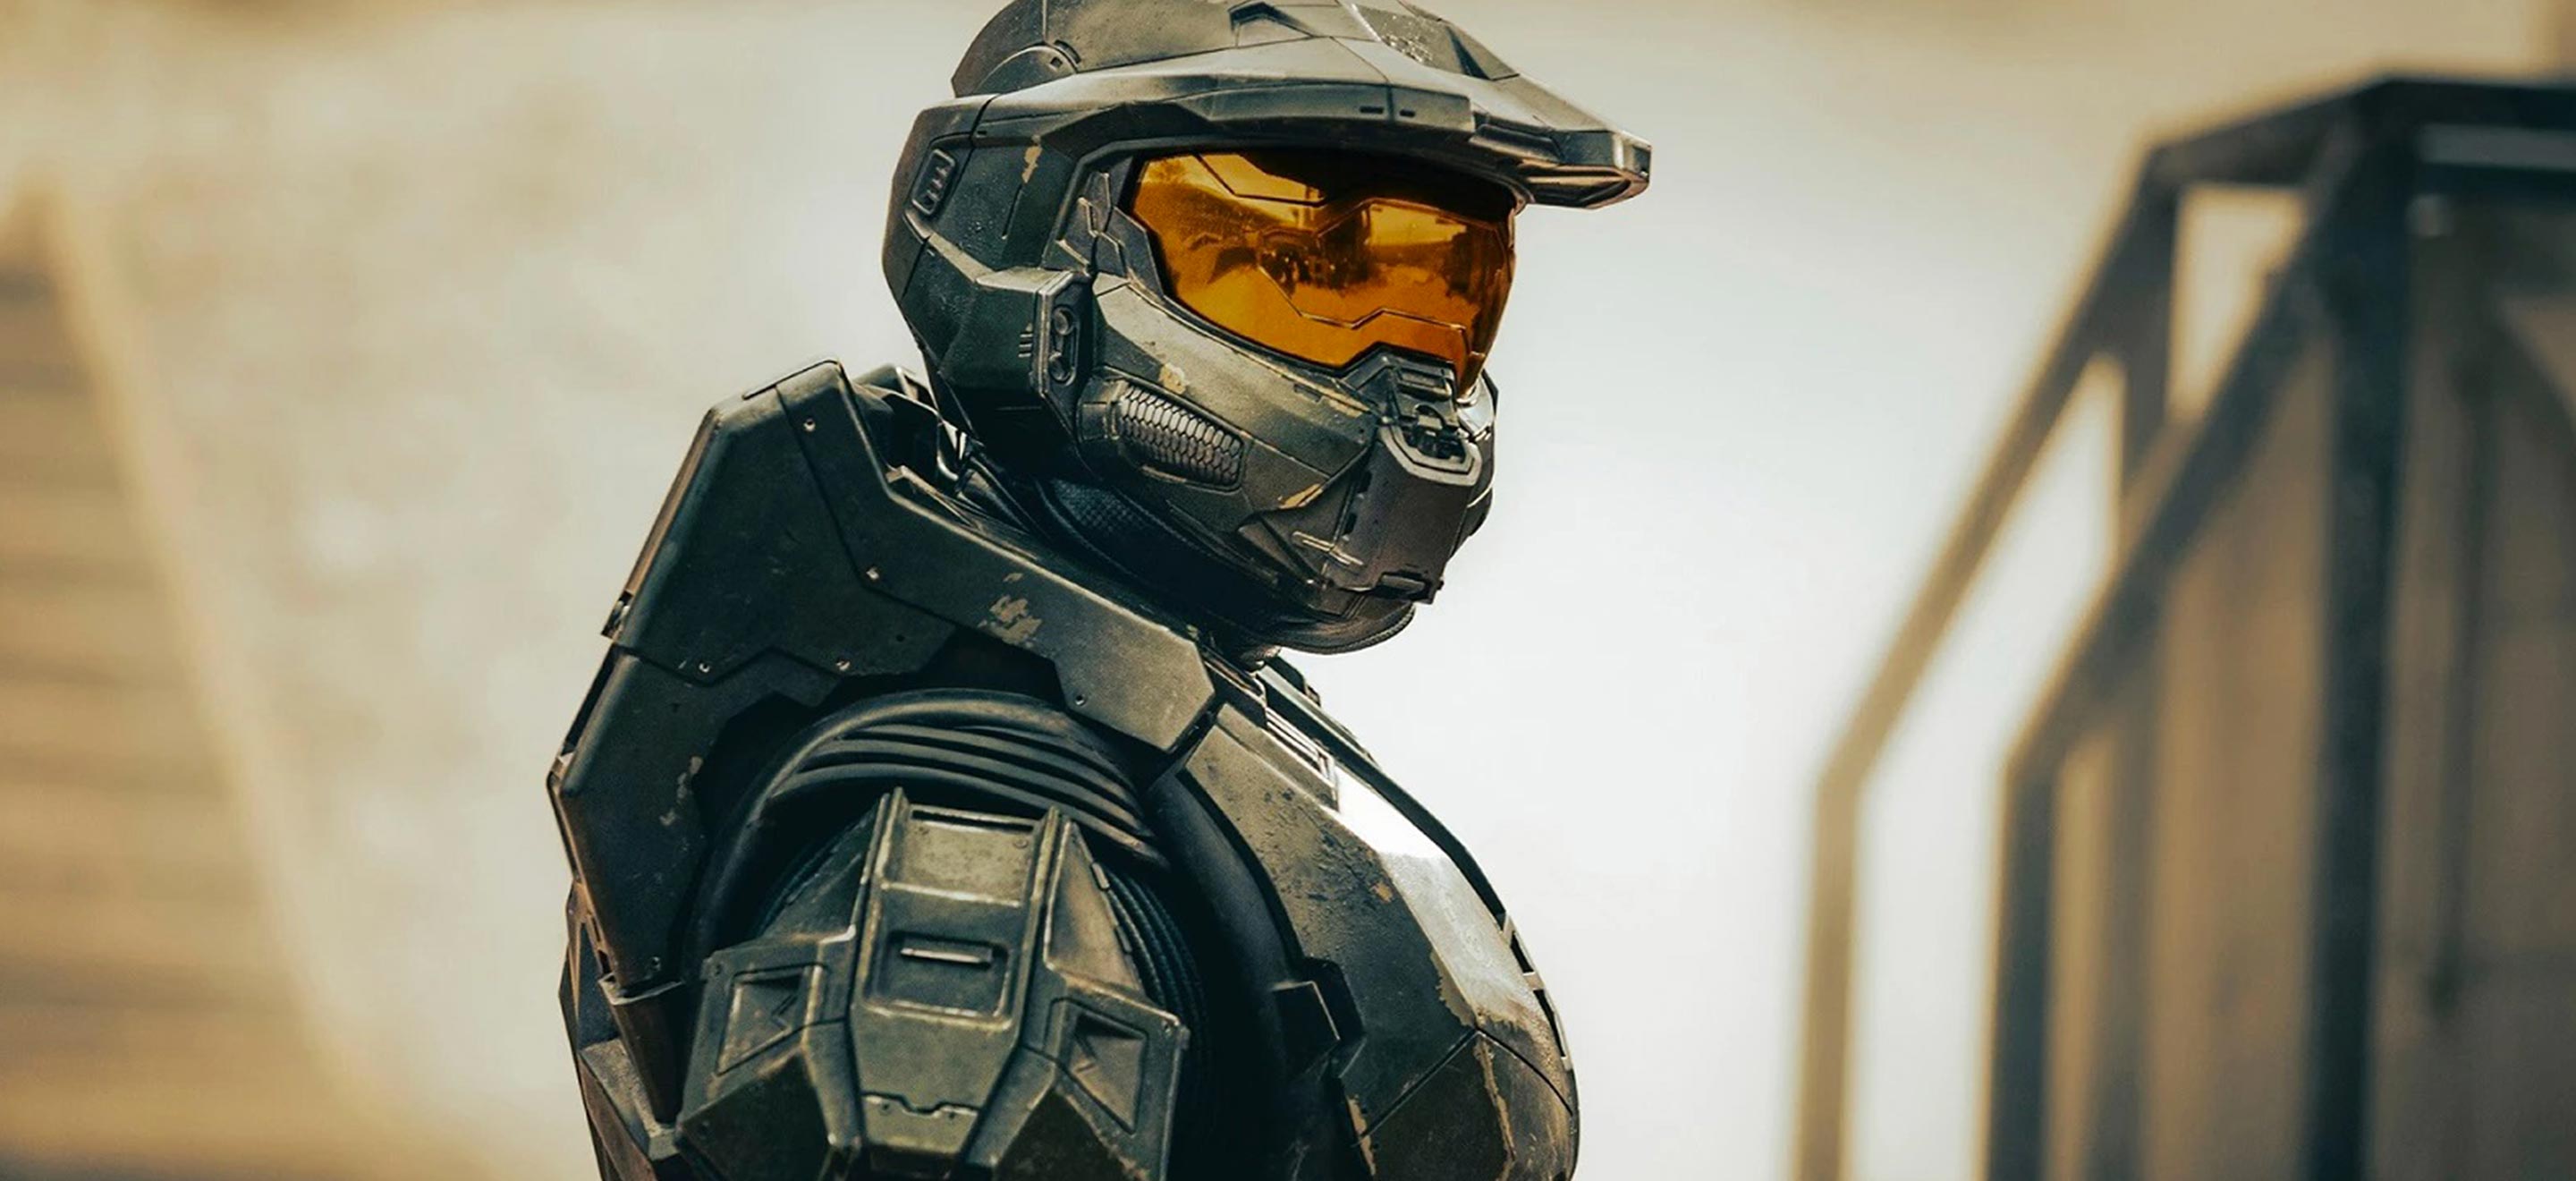 Pourquoi il faut voir Halo, la série tant attendue sur Master Chief